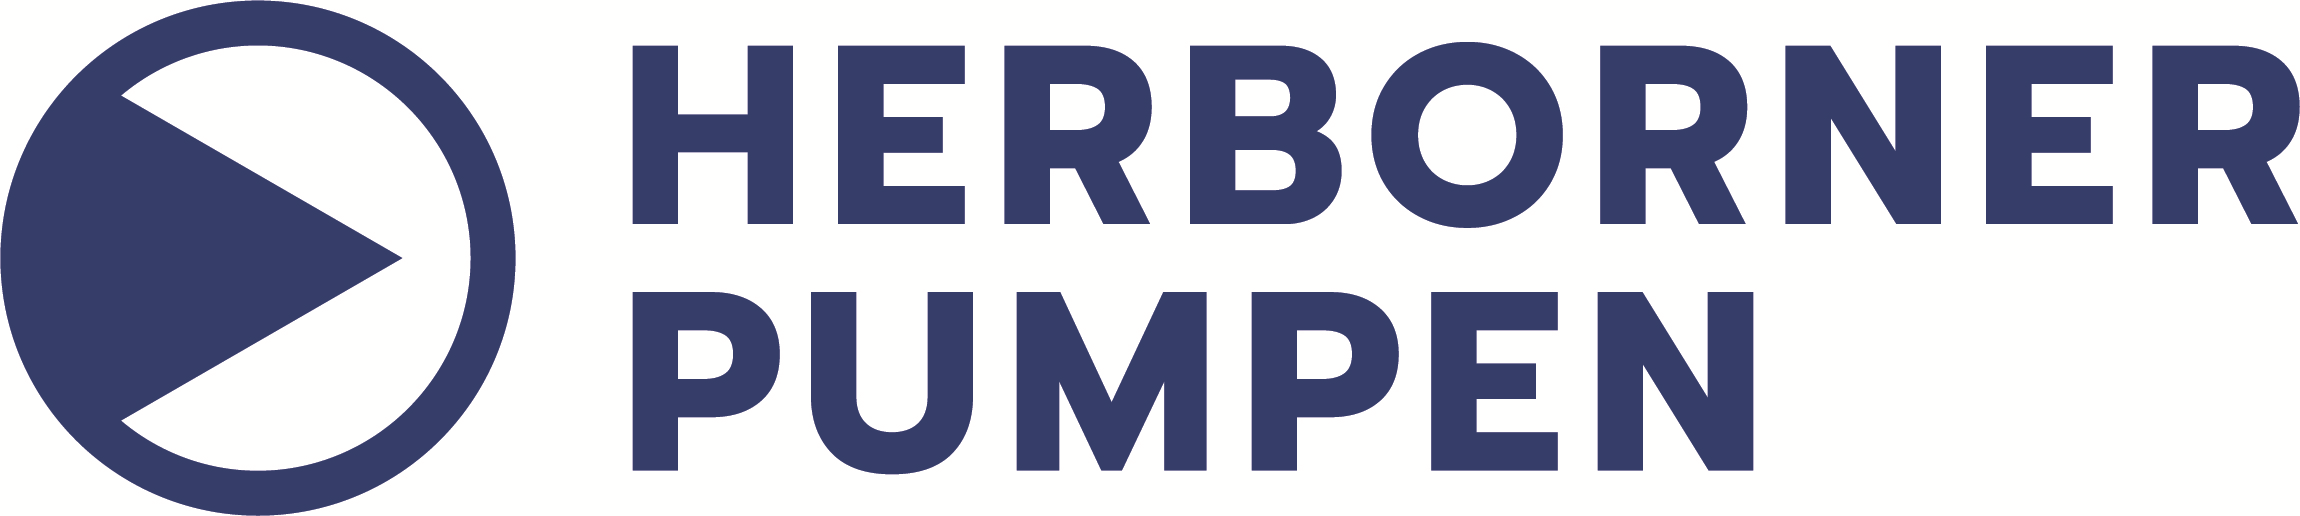 Herborner Pumpenfabrik GmbH, Herborner pompen